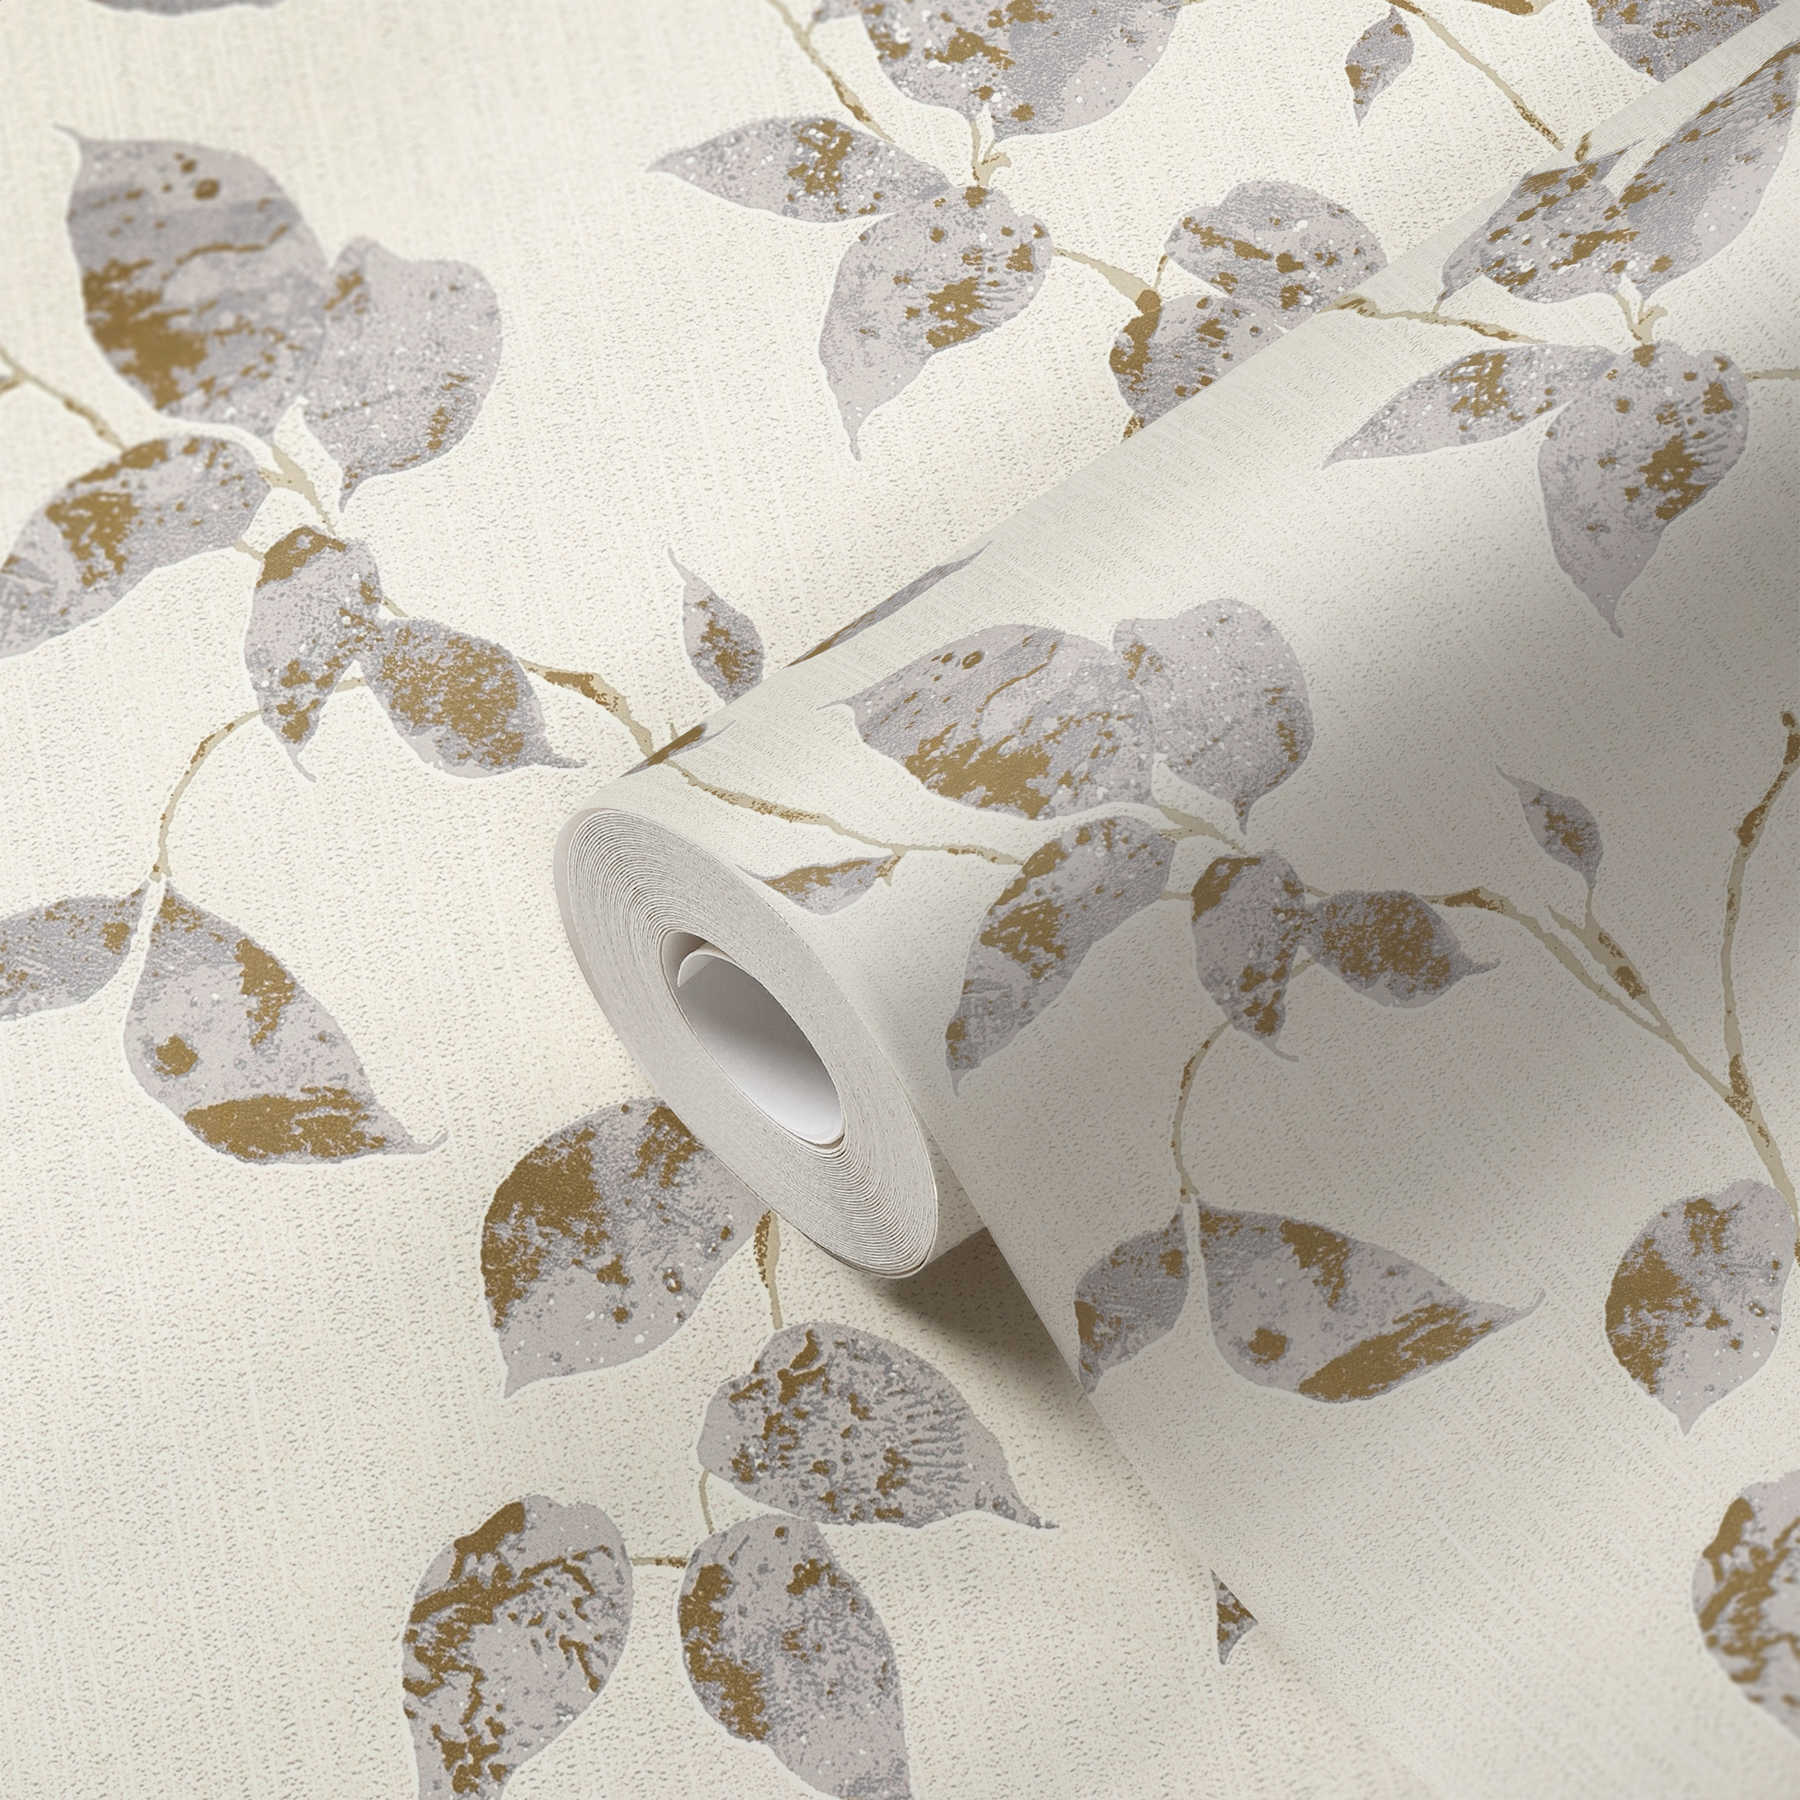             Papier peint texturé avec rinceaux de feuilles & accent métallique - gris, blanc
        